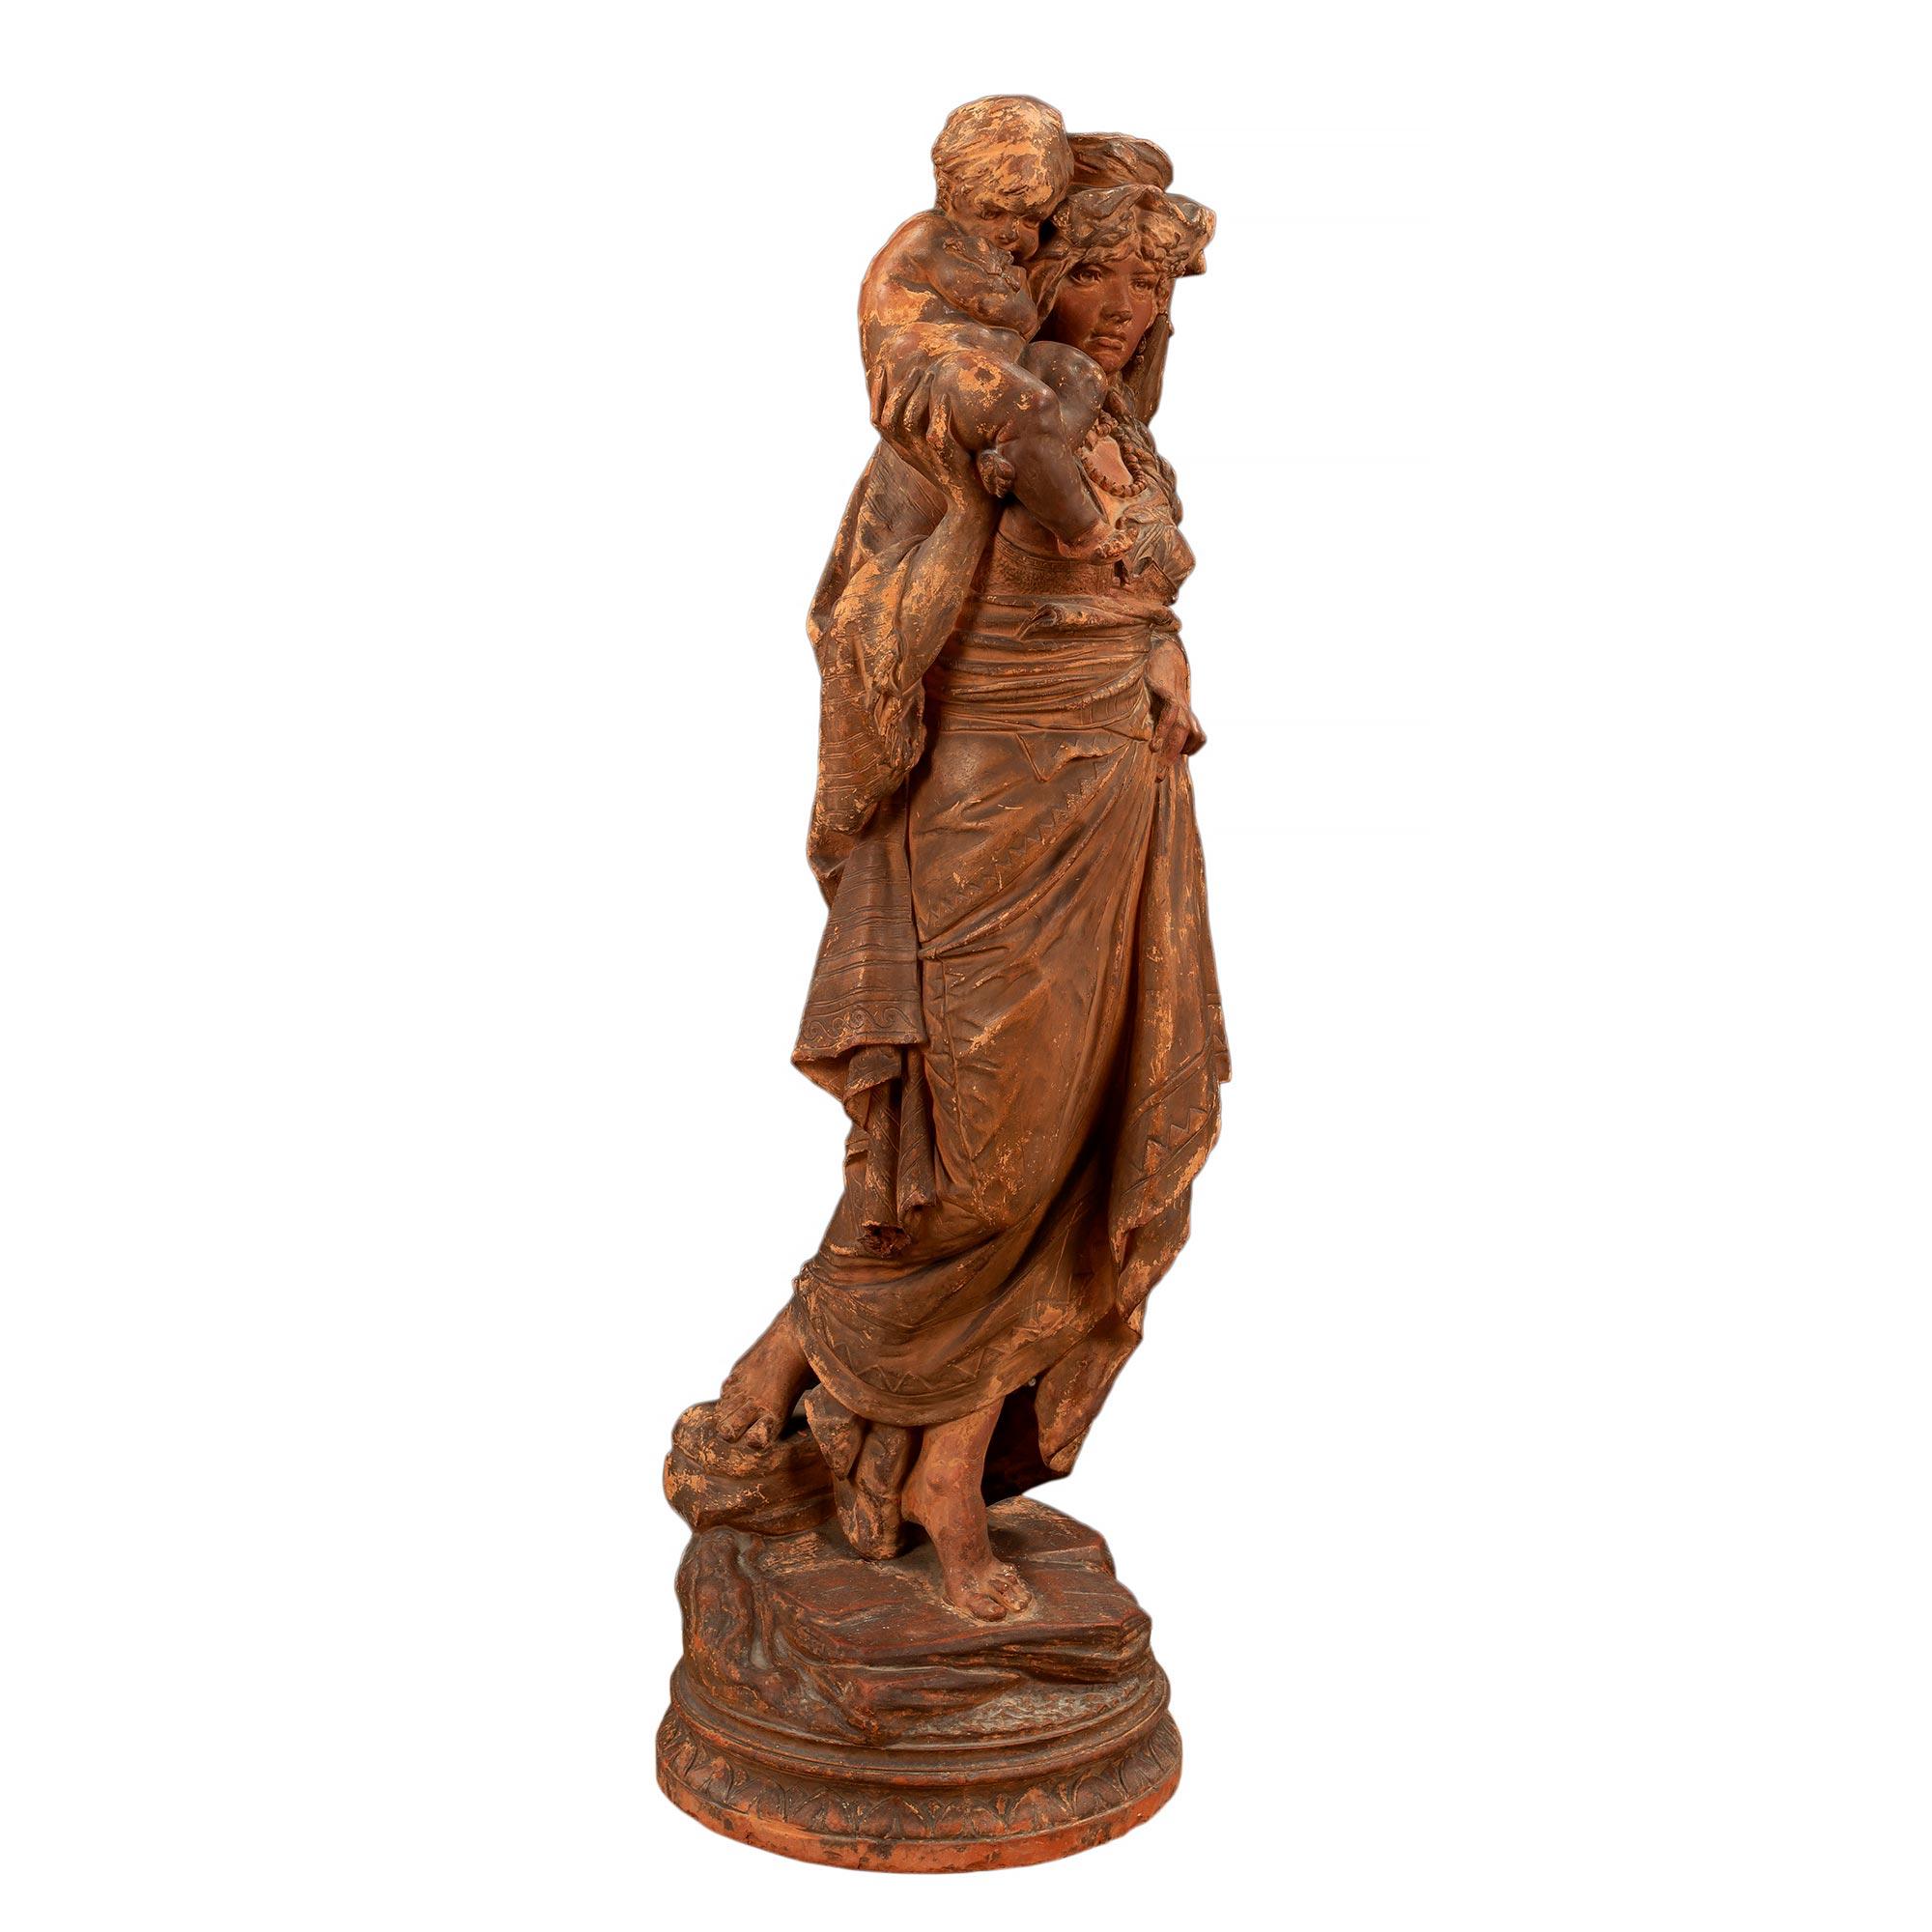 Eine wunderbare französische Terrakotta-Statue aus dem 18. Jahrhundert mit Mutter und Kind. Die Statue steht auf einem kreisrunden, geländegängigen Sockel. Die Frau ist barfuß und trägt ein traditionelles Kleid mit einer perlenbesetzten Halskette